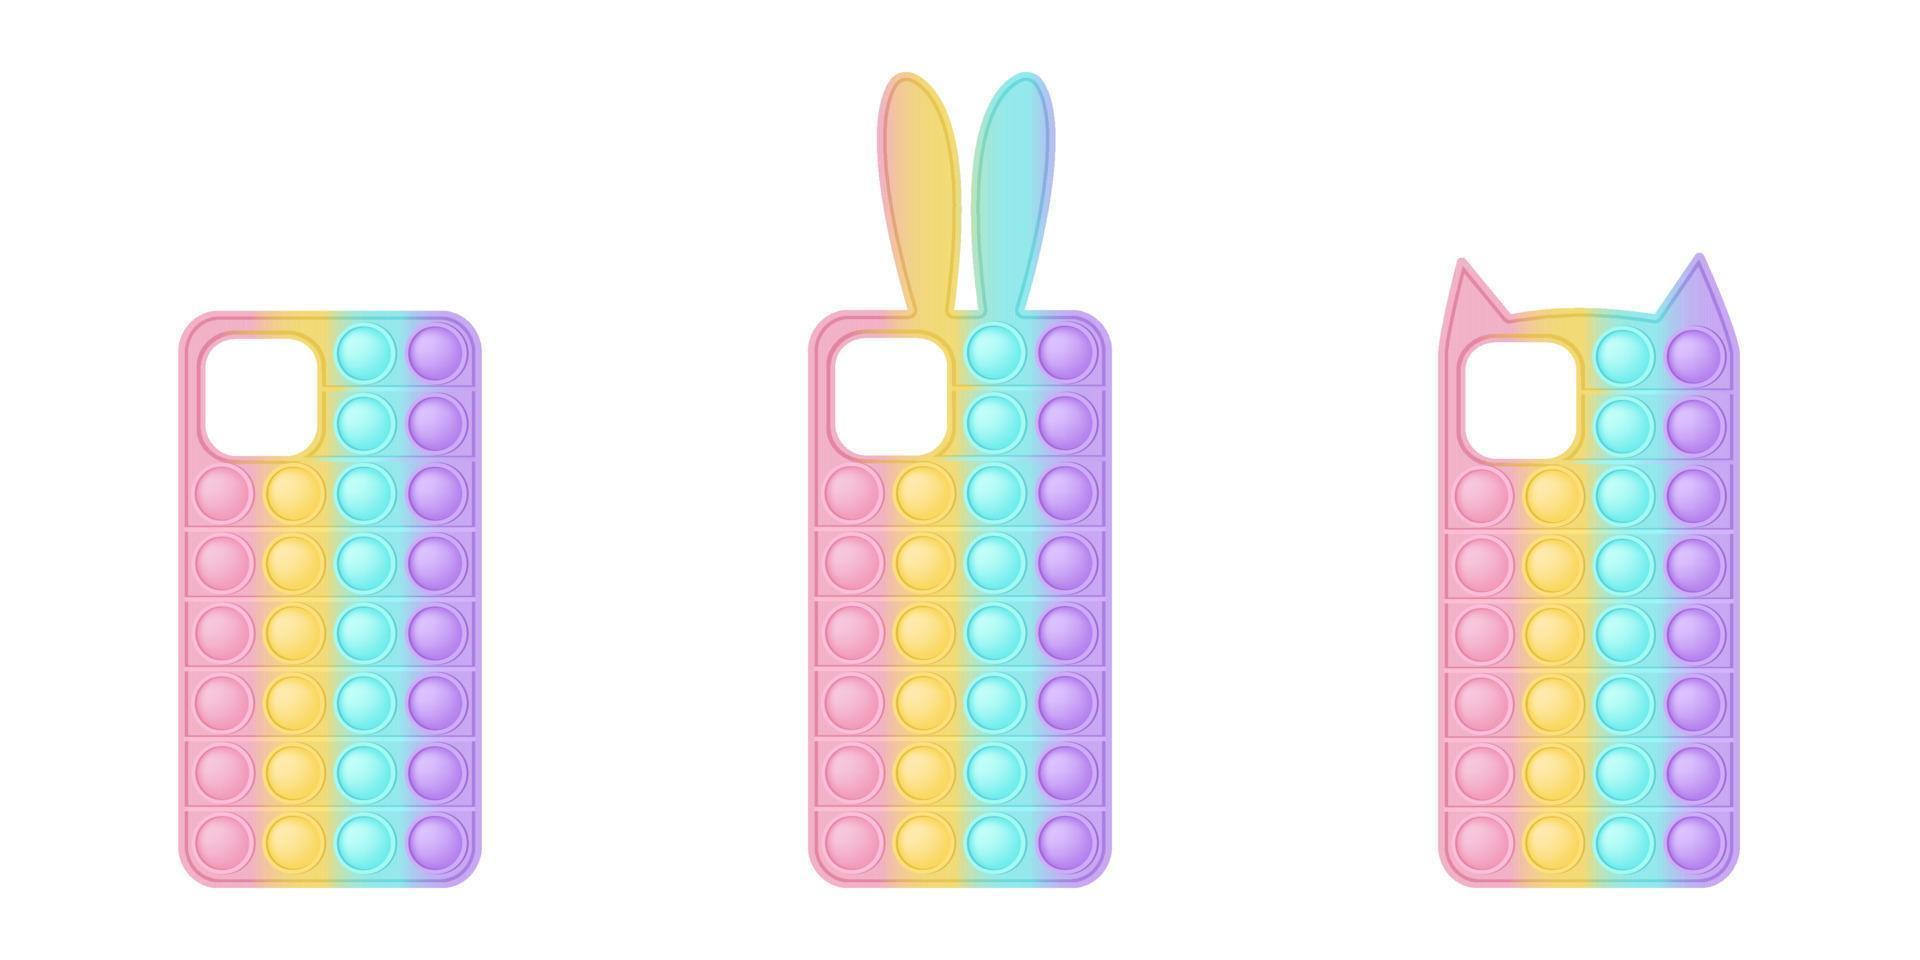 capas de celular em forma de brinquedo popping para inquietações. as capas são em cores pastel do arco-íris com orelhas de coelho e gatinho e uma forma simples. ilustração vetorial isolada vetor